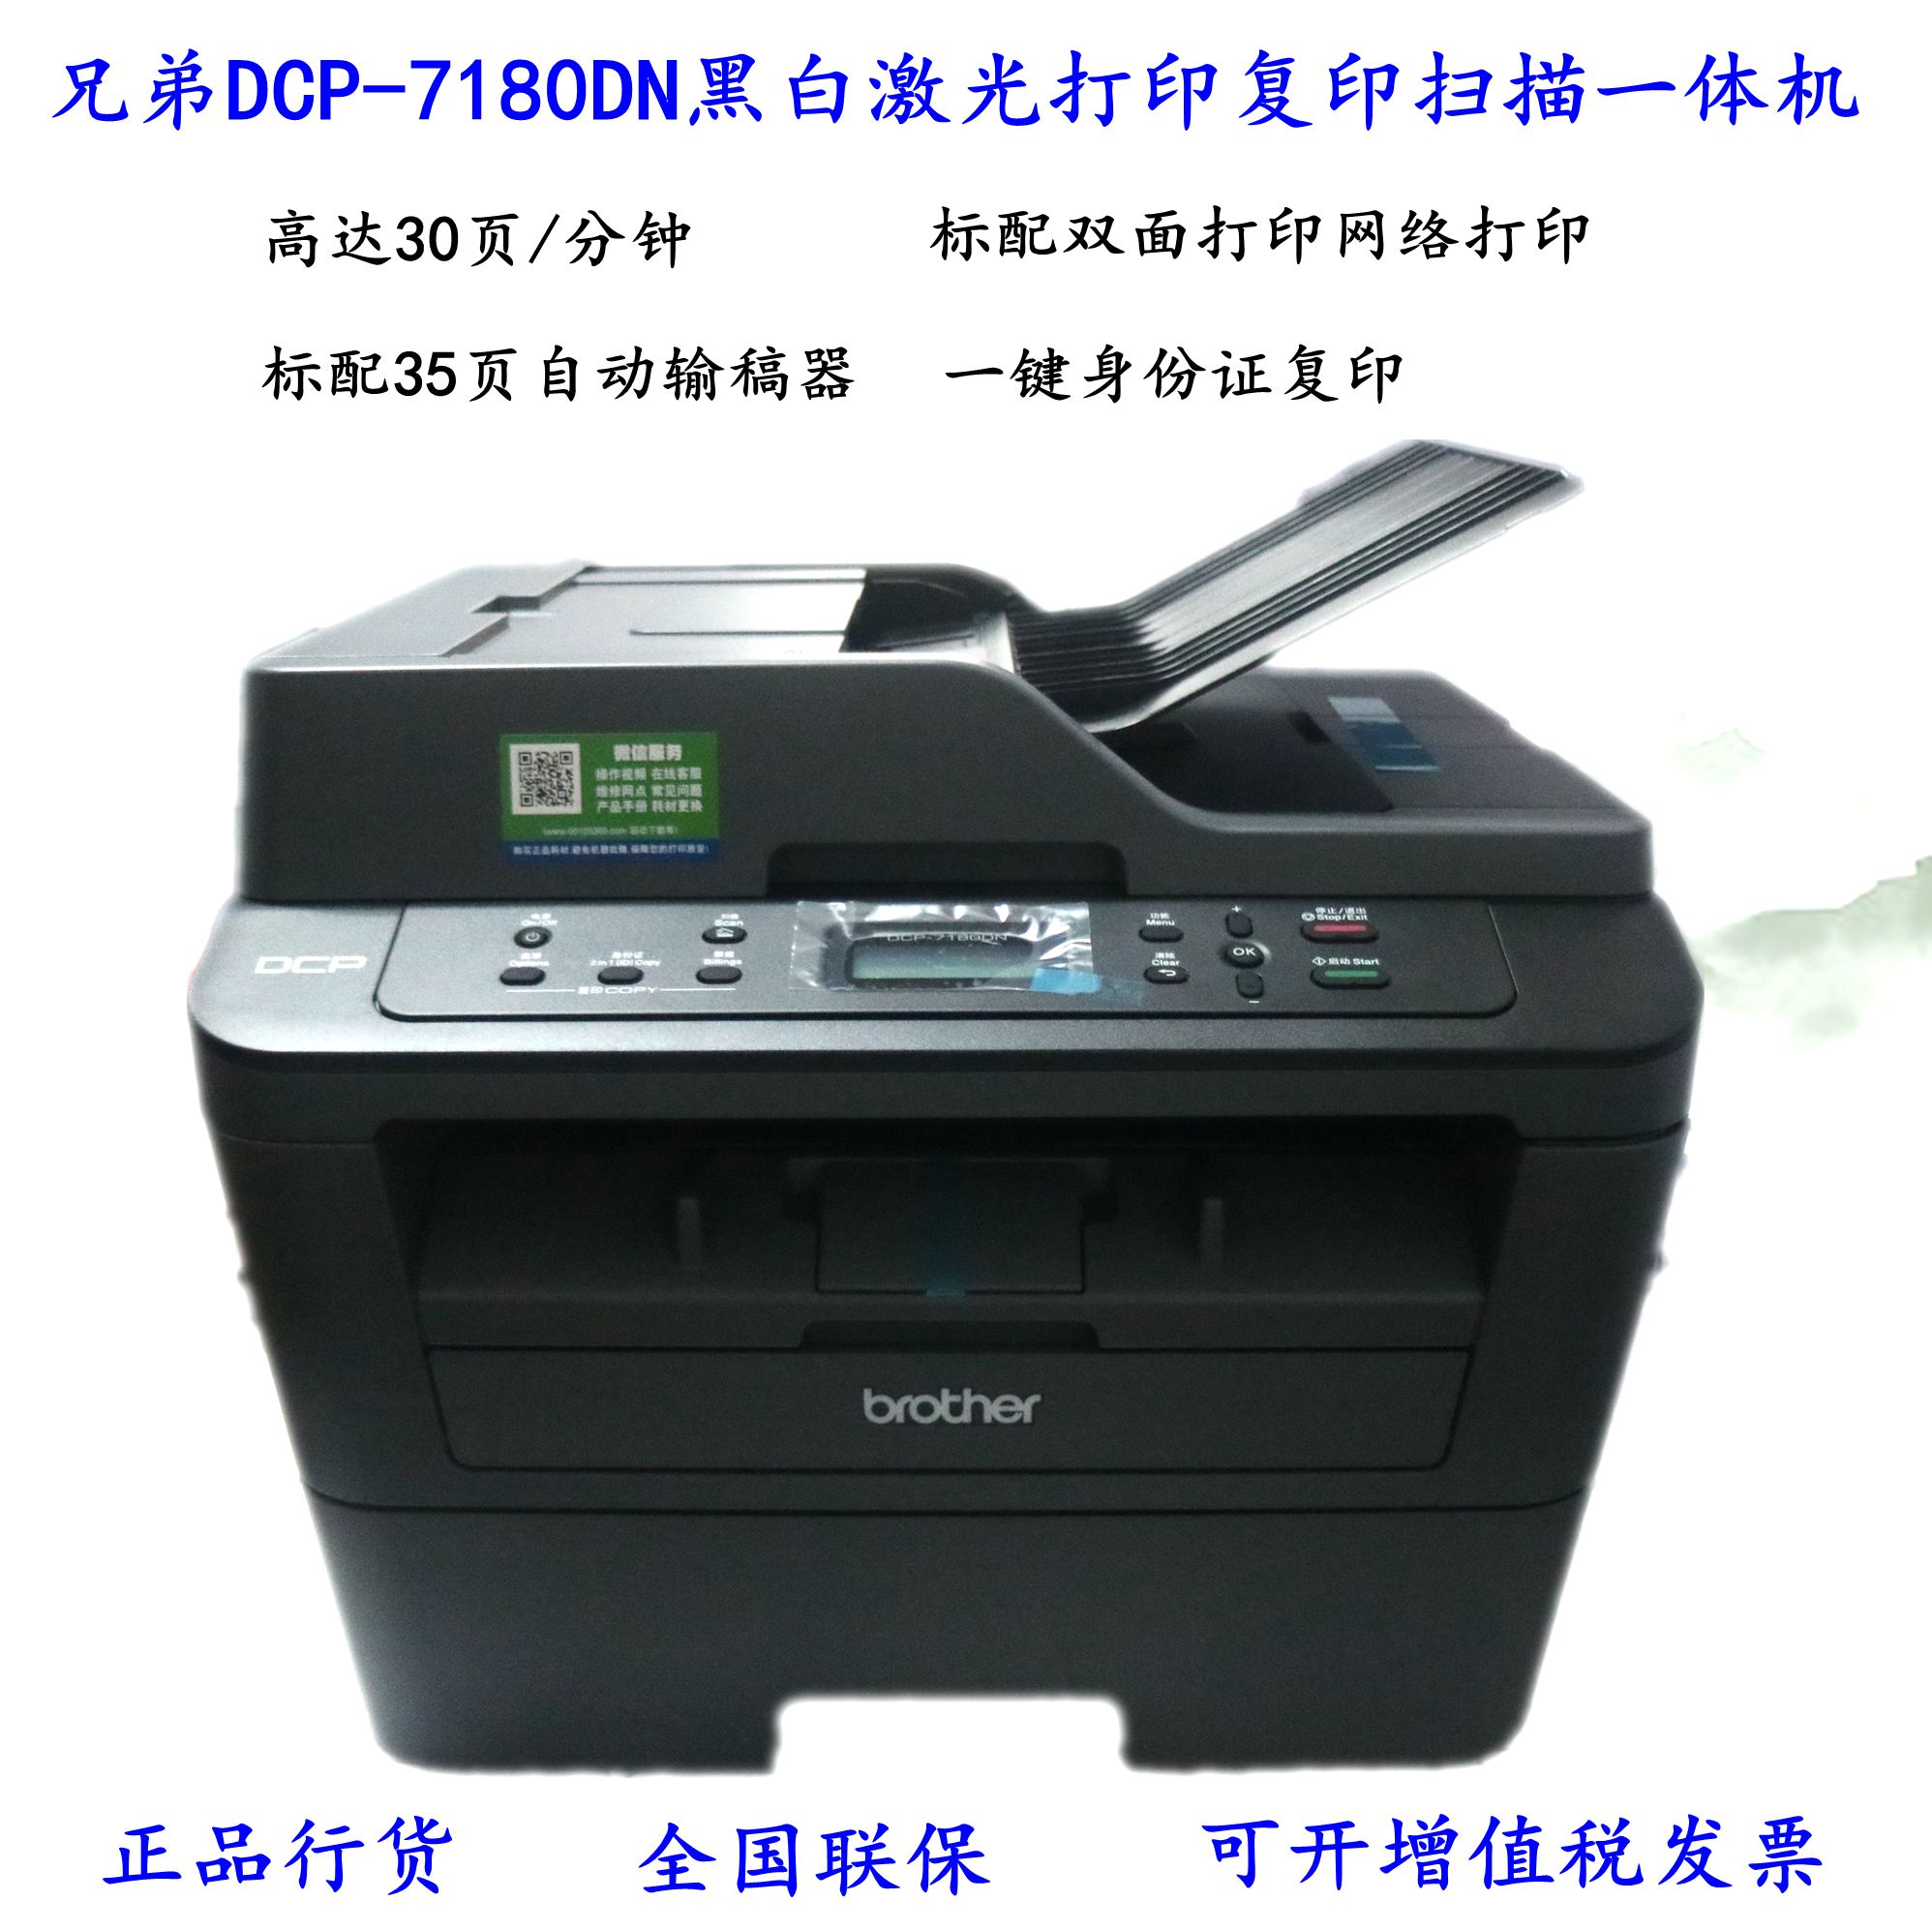 兄弟DCP-7180DN/L2508/2548/7190DW黑白激光A4打印复印扫描一体机